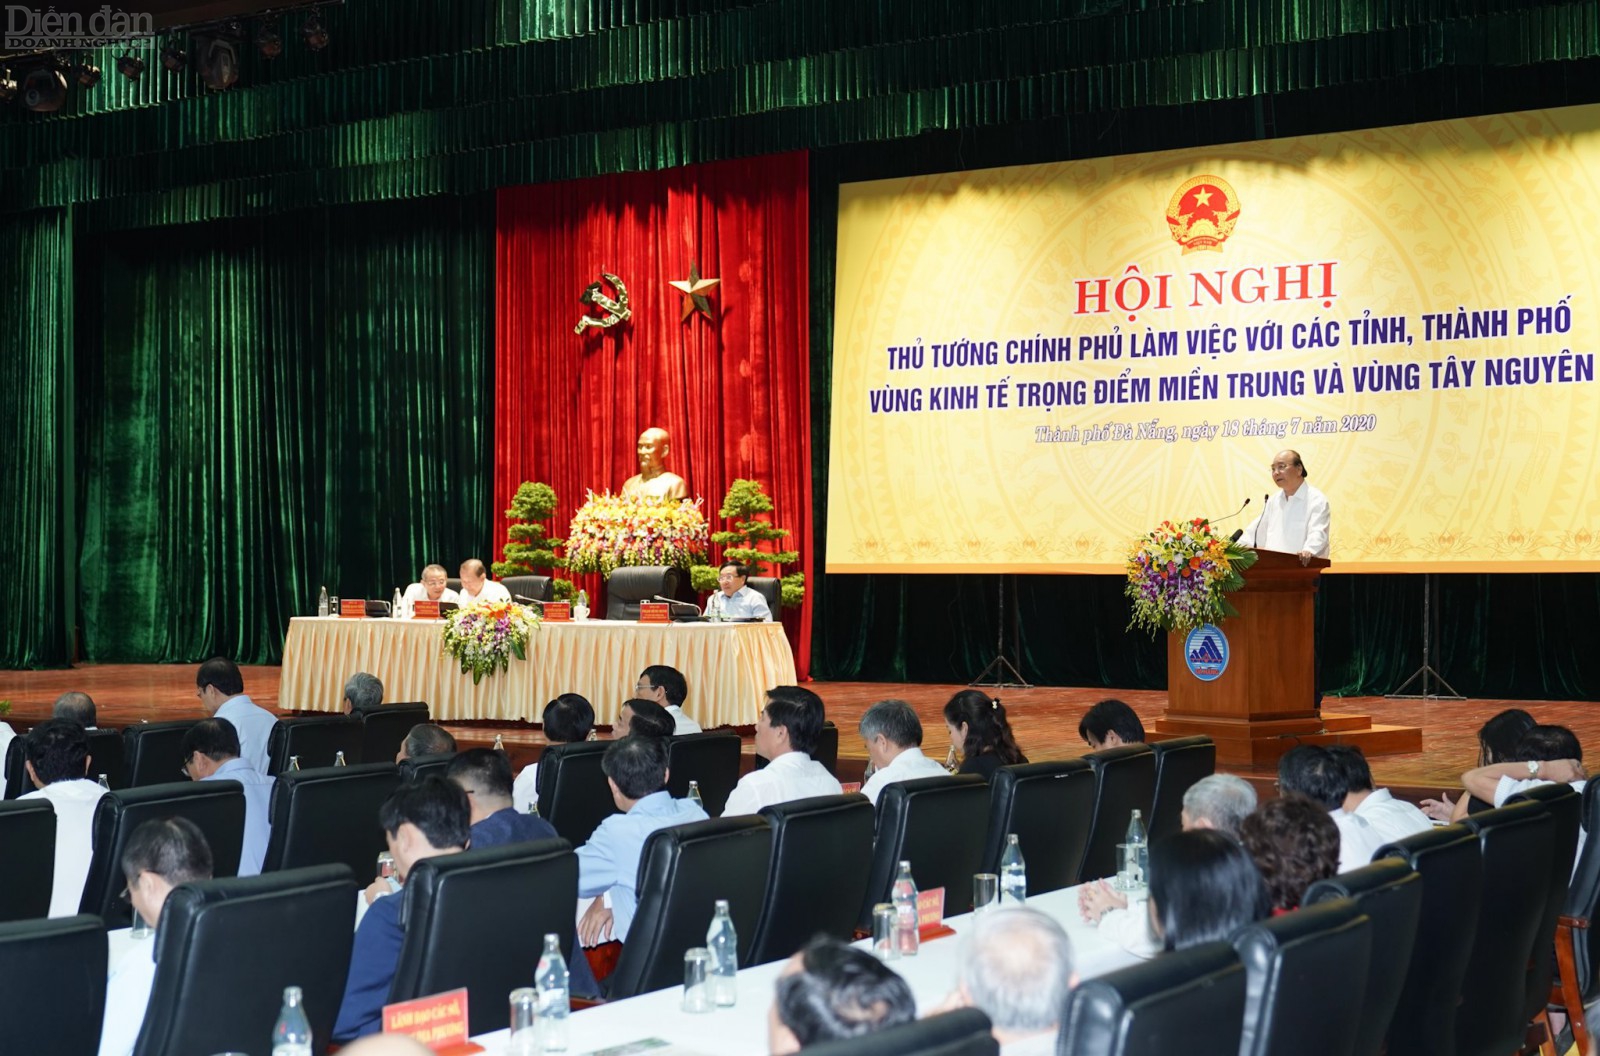 Thủ tướng Nguyễn Xuân Phúc đã có buổi làm việc với các tỉnh, thành phố vùng kinh tế trọng điểm miền Trung và Vùng Tây Nguyên.